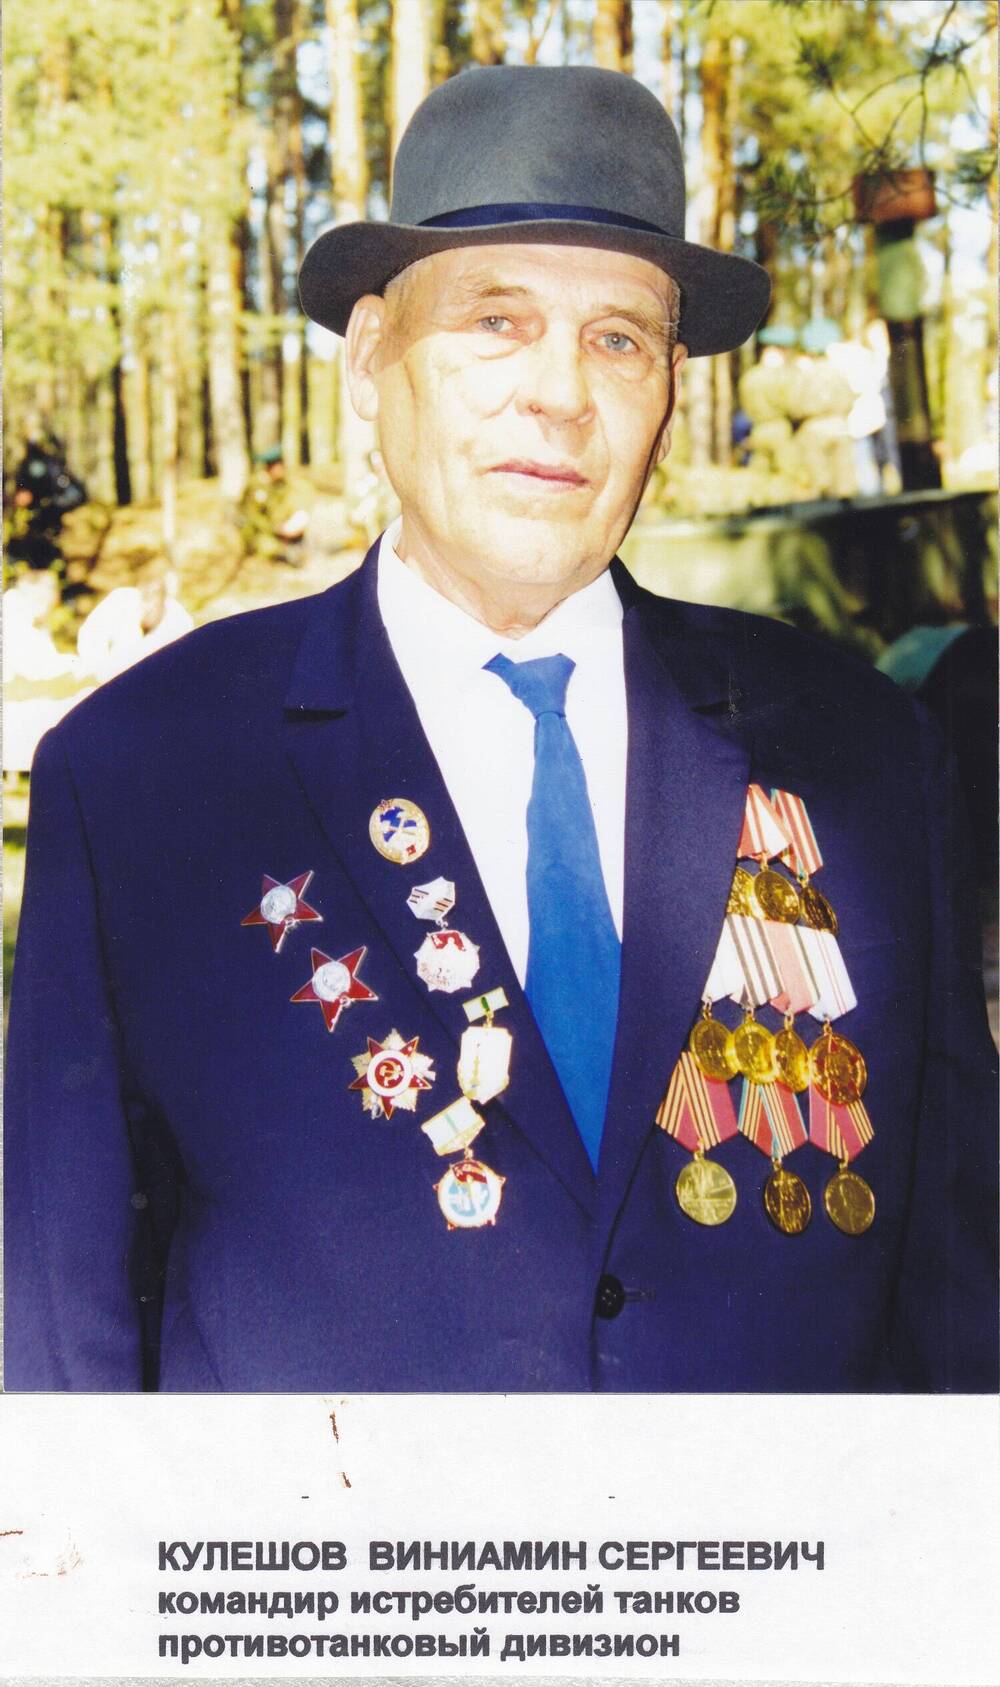 Фото Кулешова Вениамина Сергеевича в пиджаке с наградами